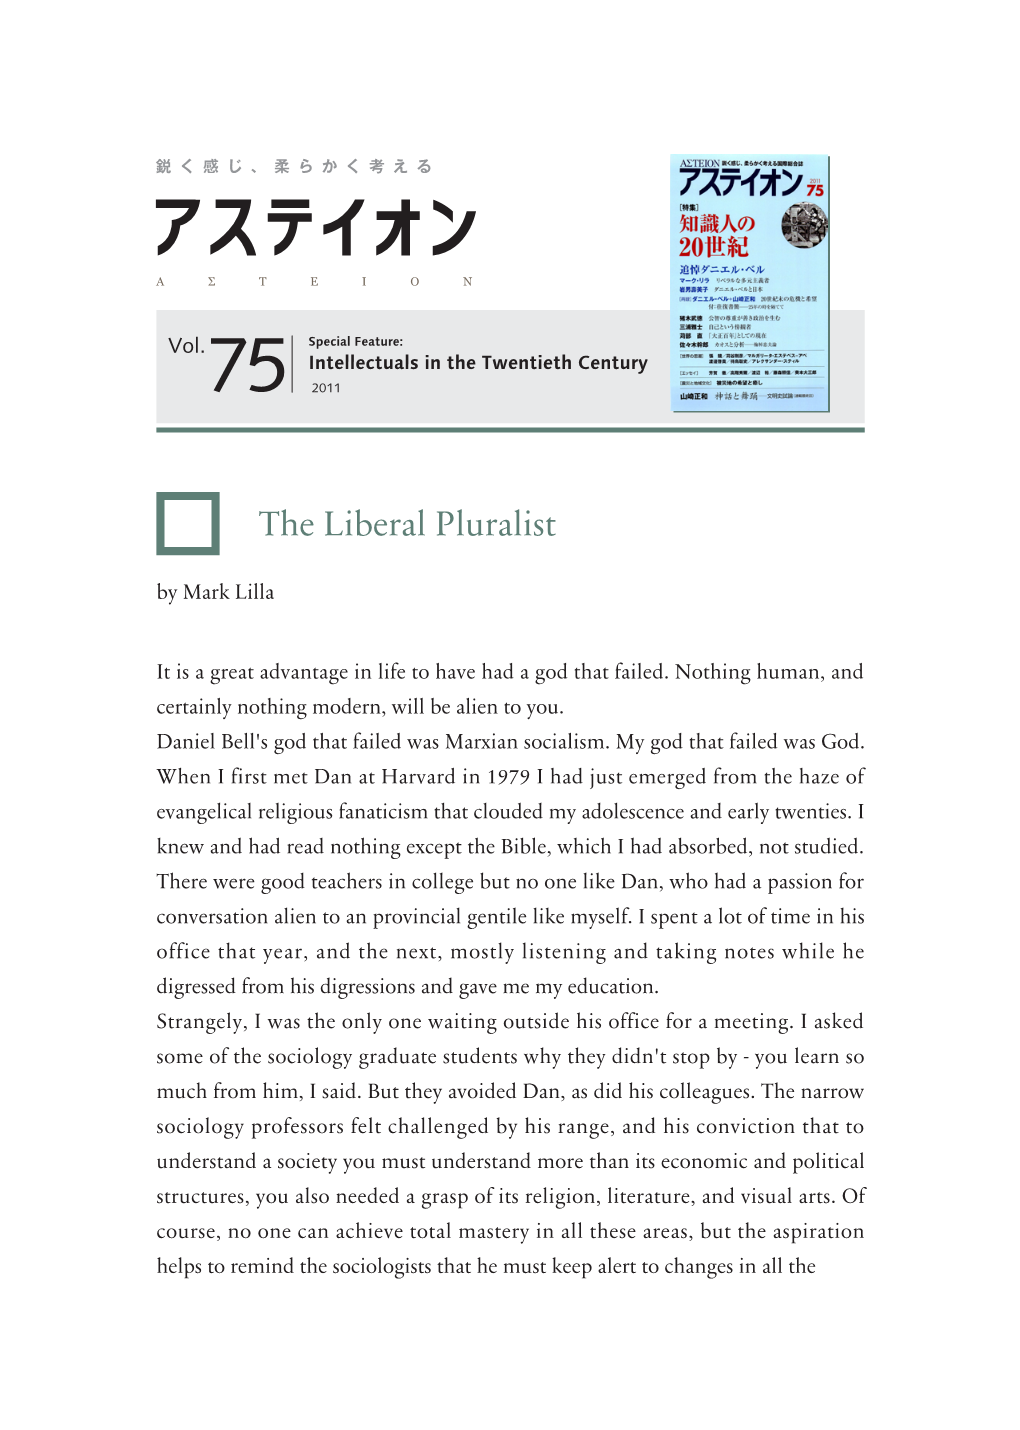 The Liberal Pluralist by Mark Lilla